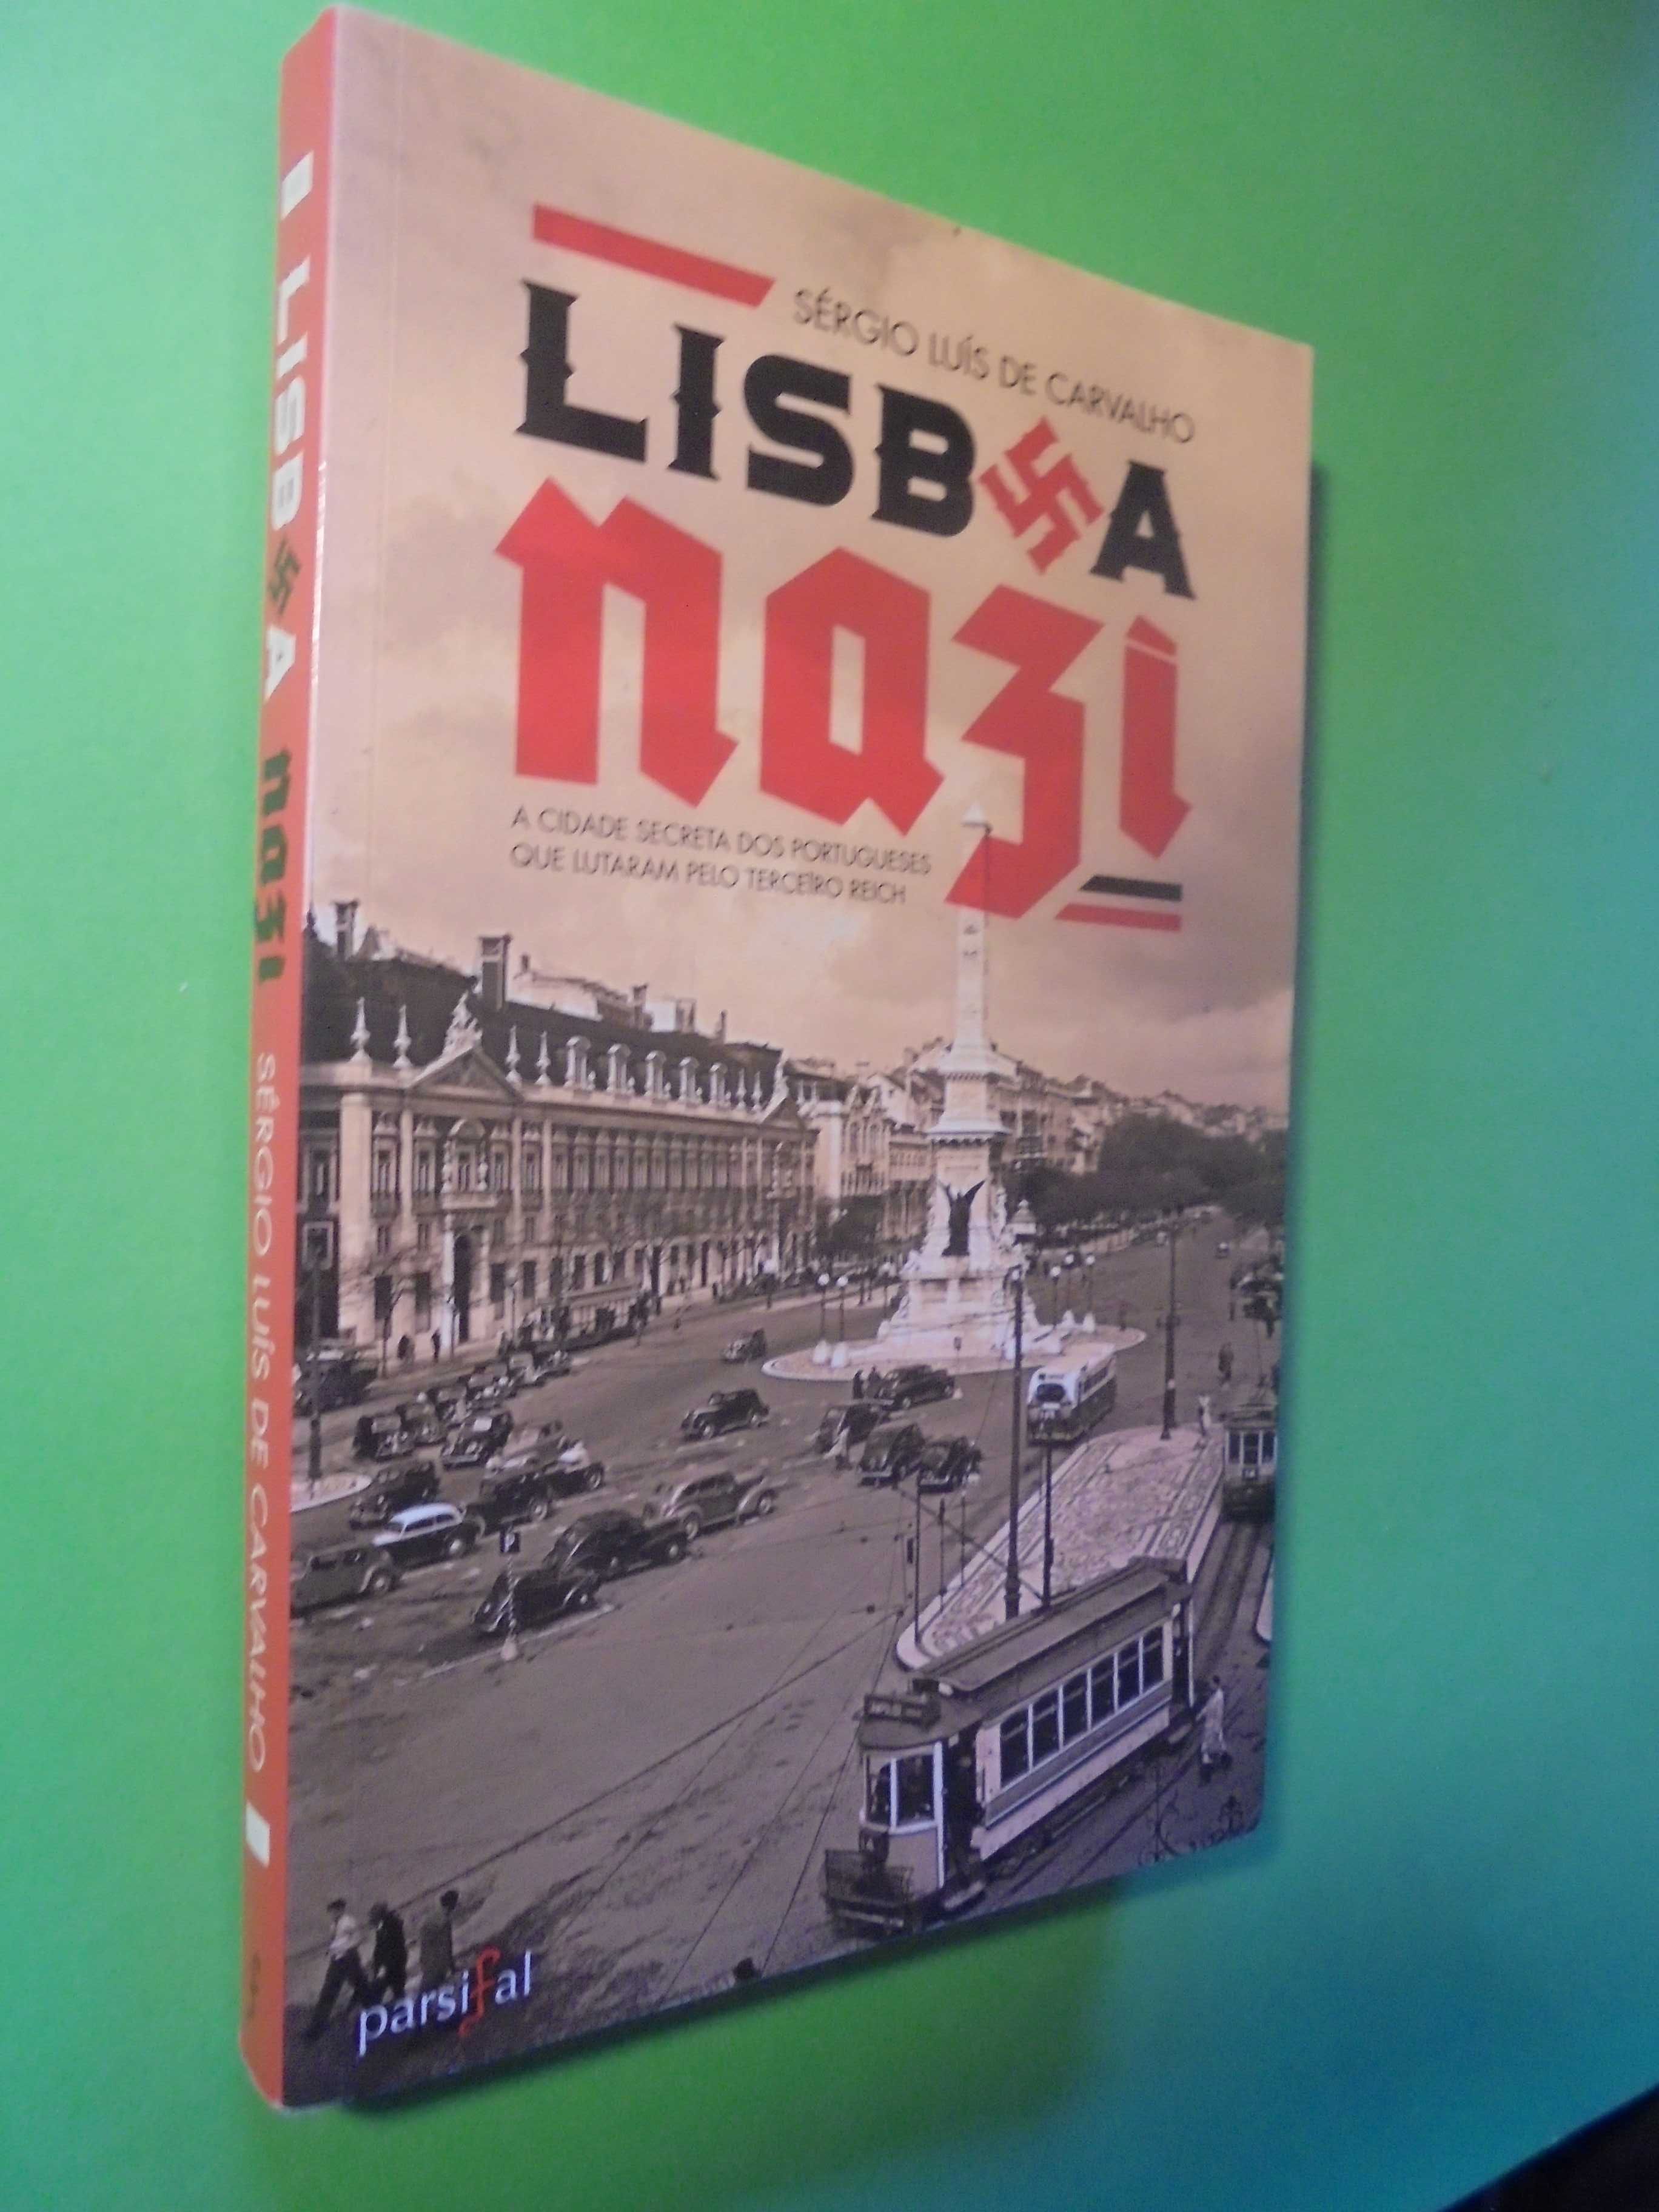 Carvalho (Sérgio Luís de);Lisboa Nazi-A Cidade Secreta dos Portugueses